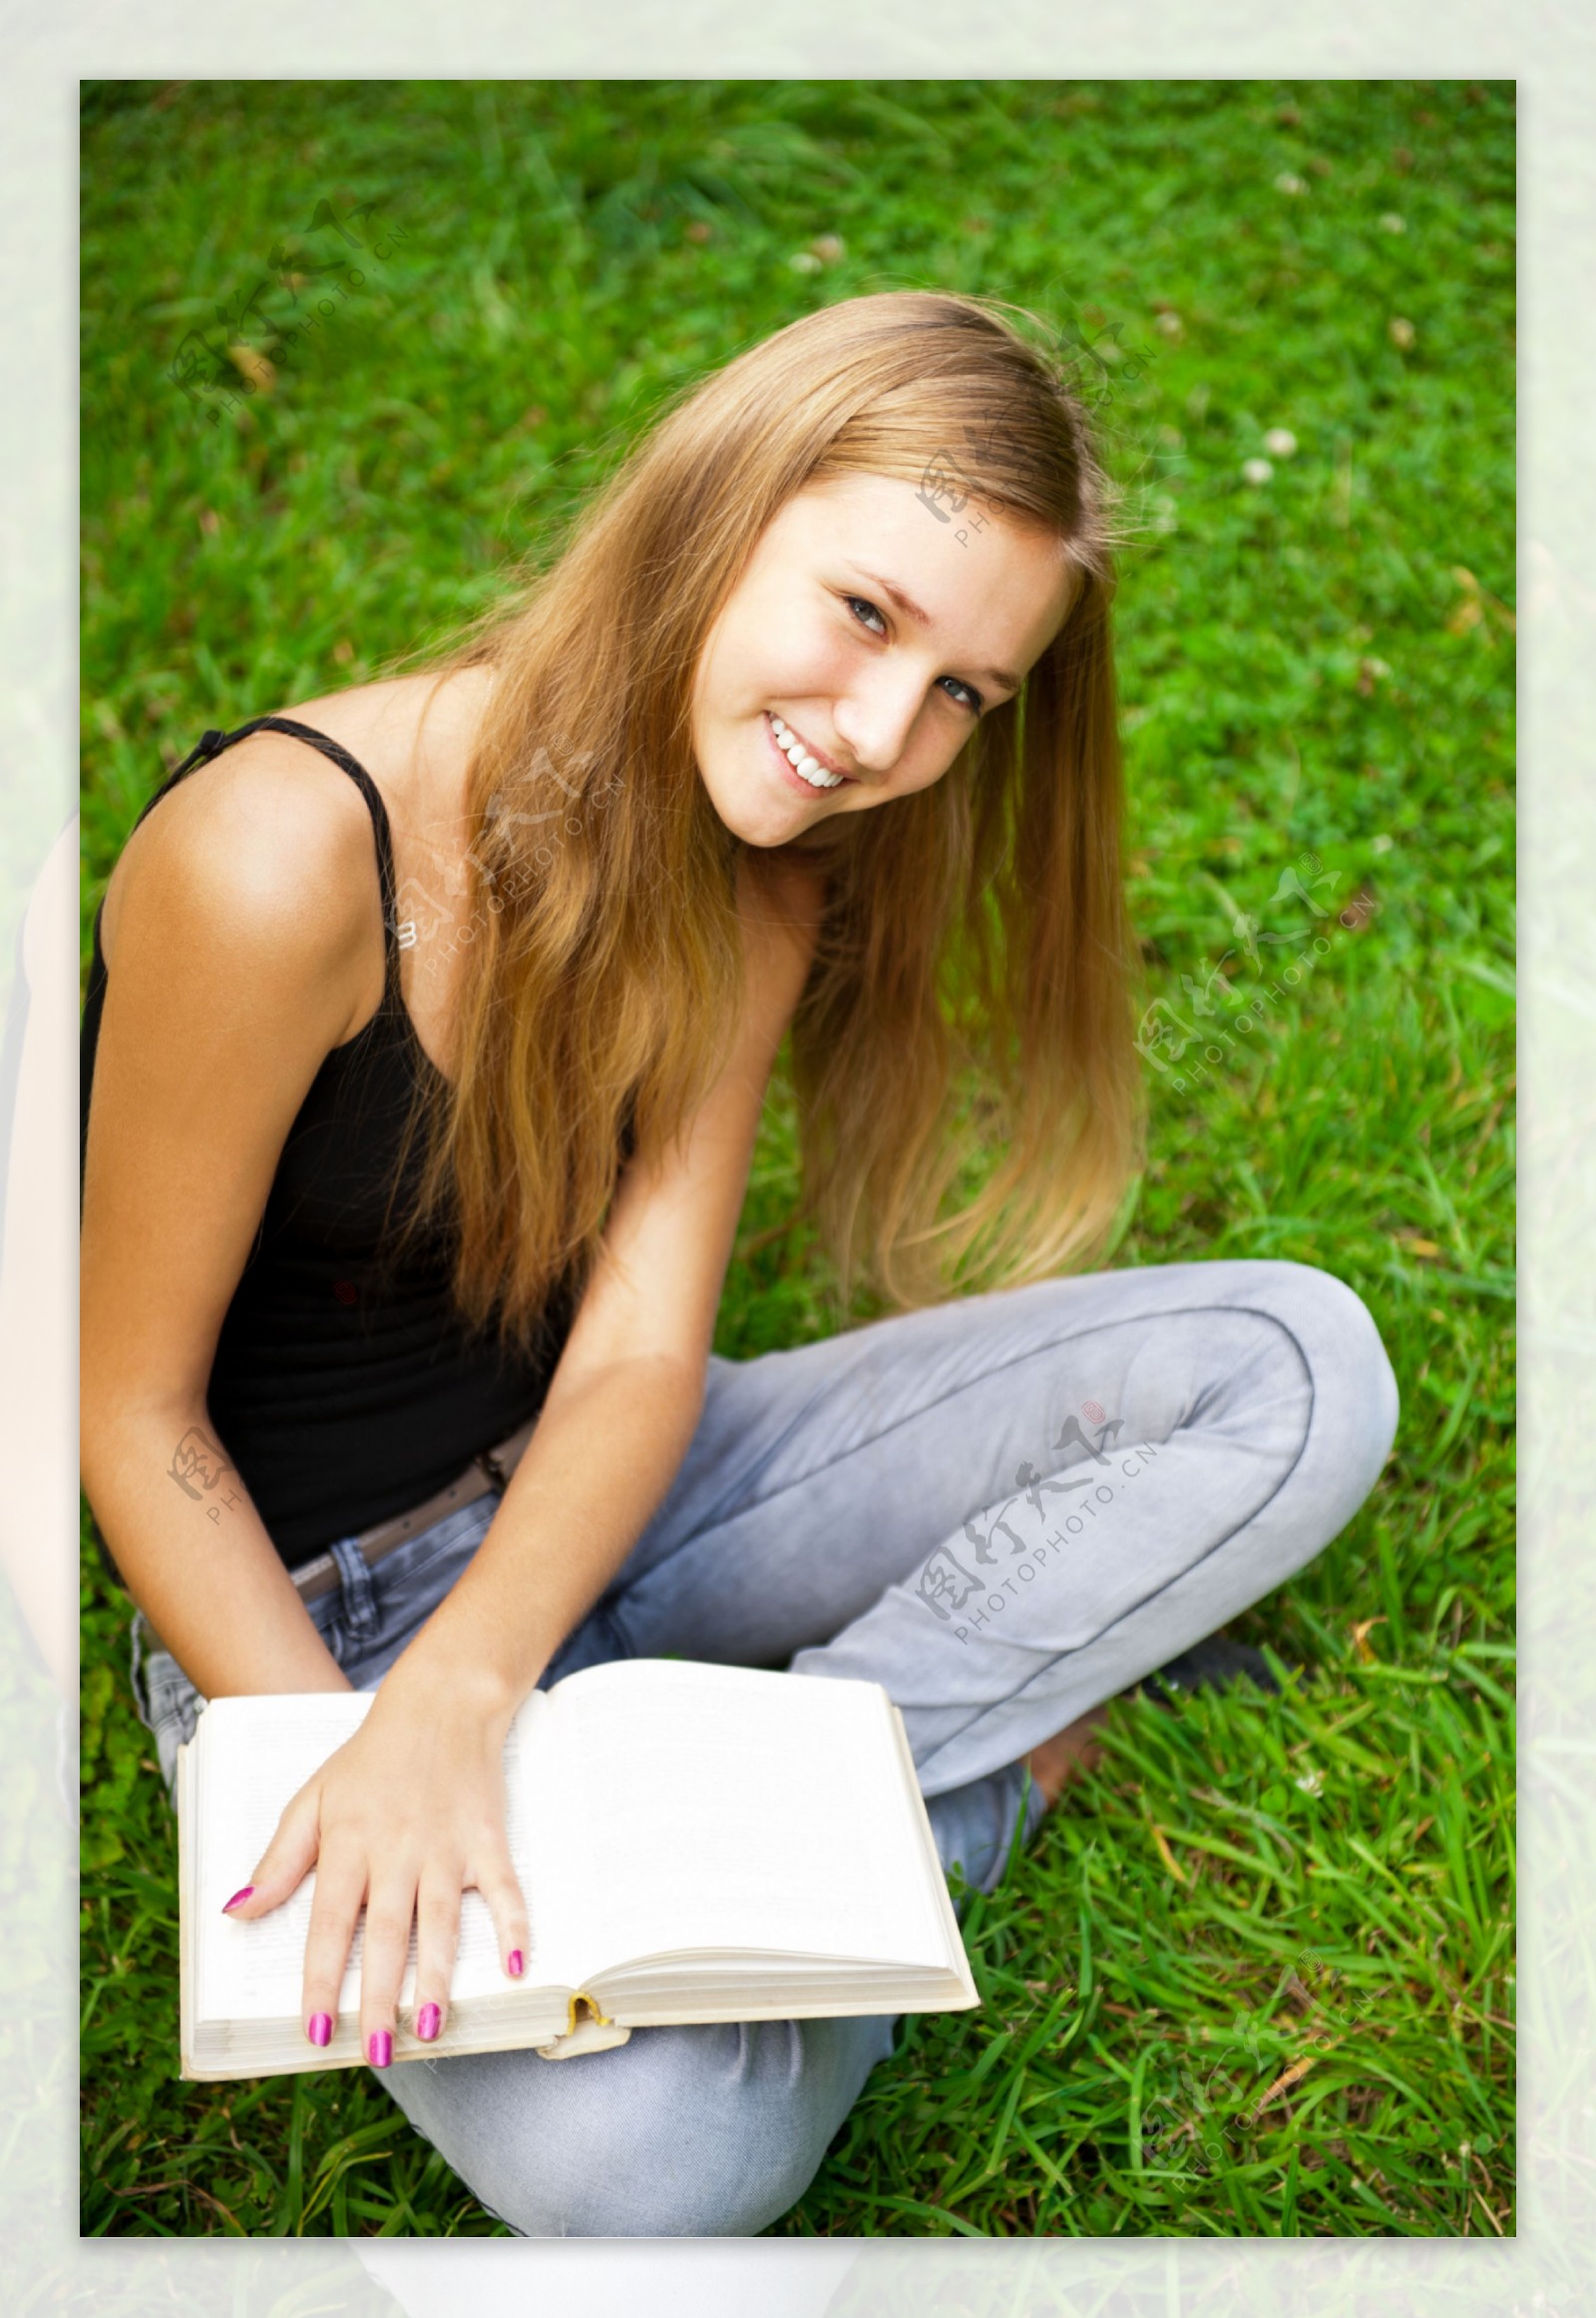 这个女孩坐着看书。年轻的女人。阅读更多的书籍插画图片素材_ID:412455813-Veer图库